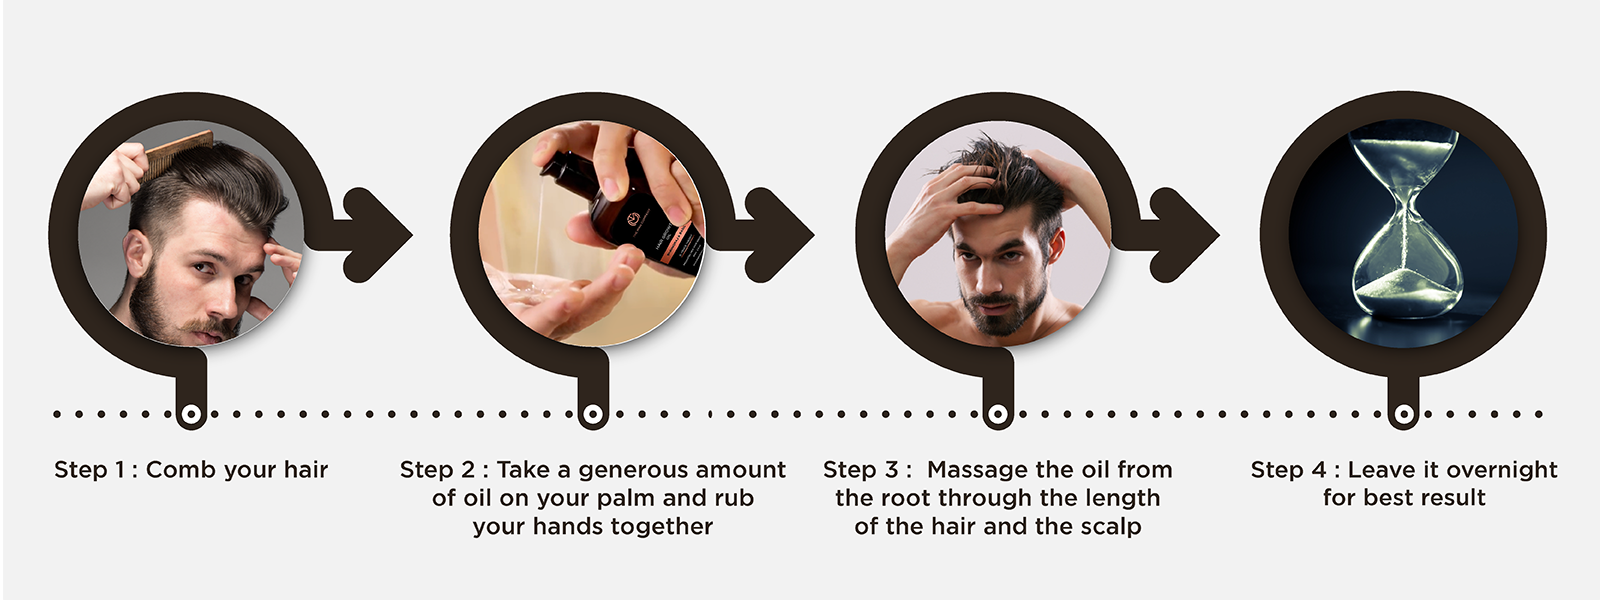 How to use anti hair fall serum